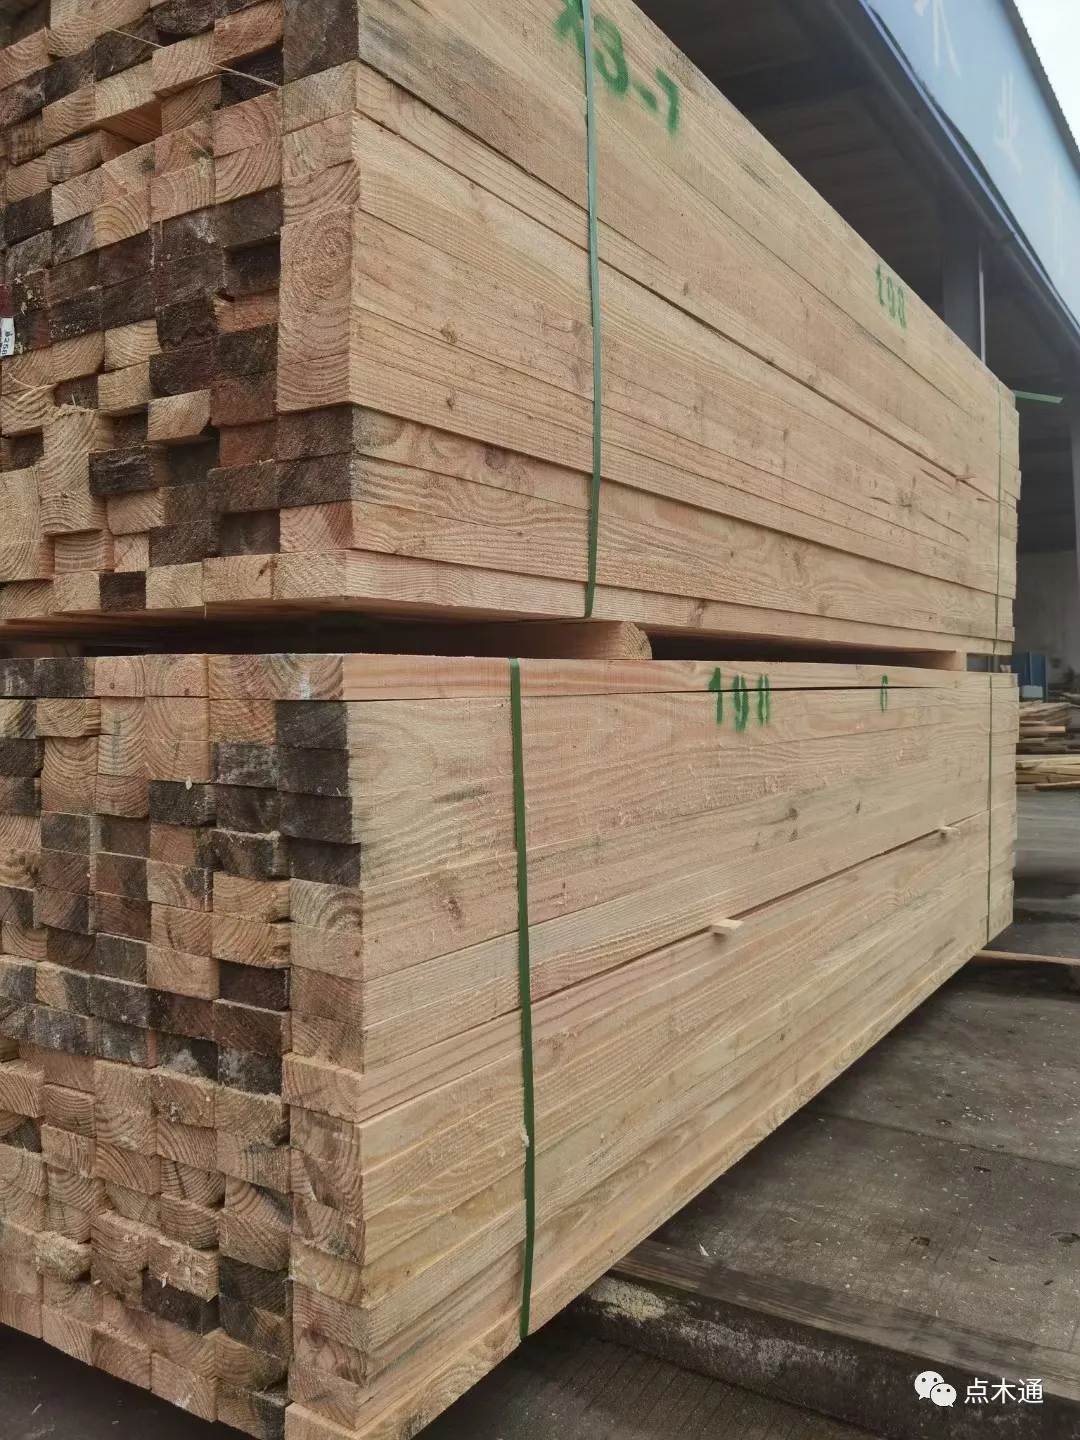 木材价格持续上涨令人难以置信，警惕跟风炒作，落袋为安